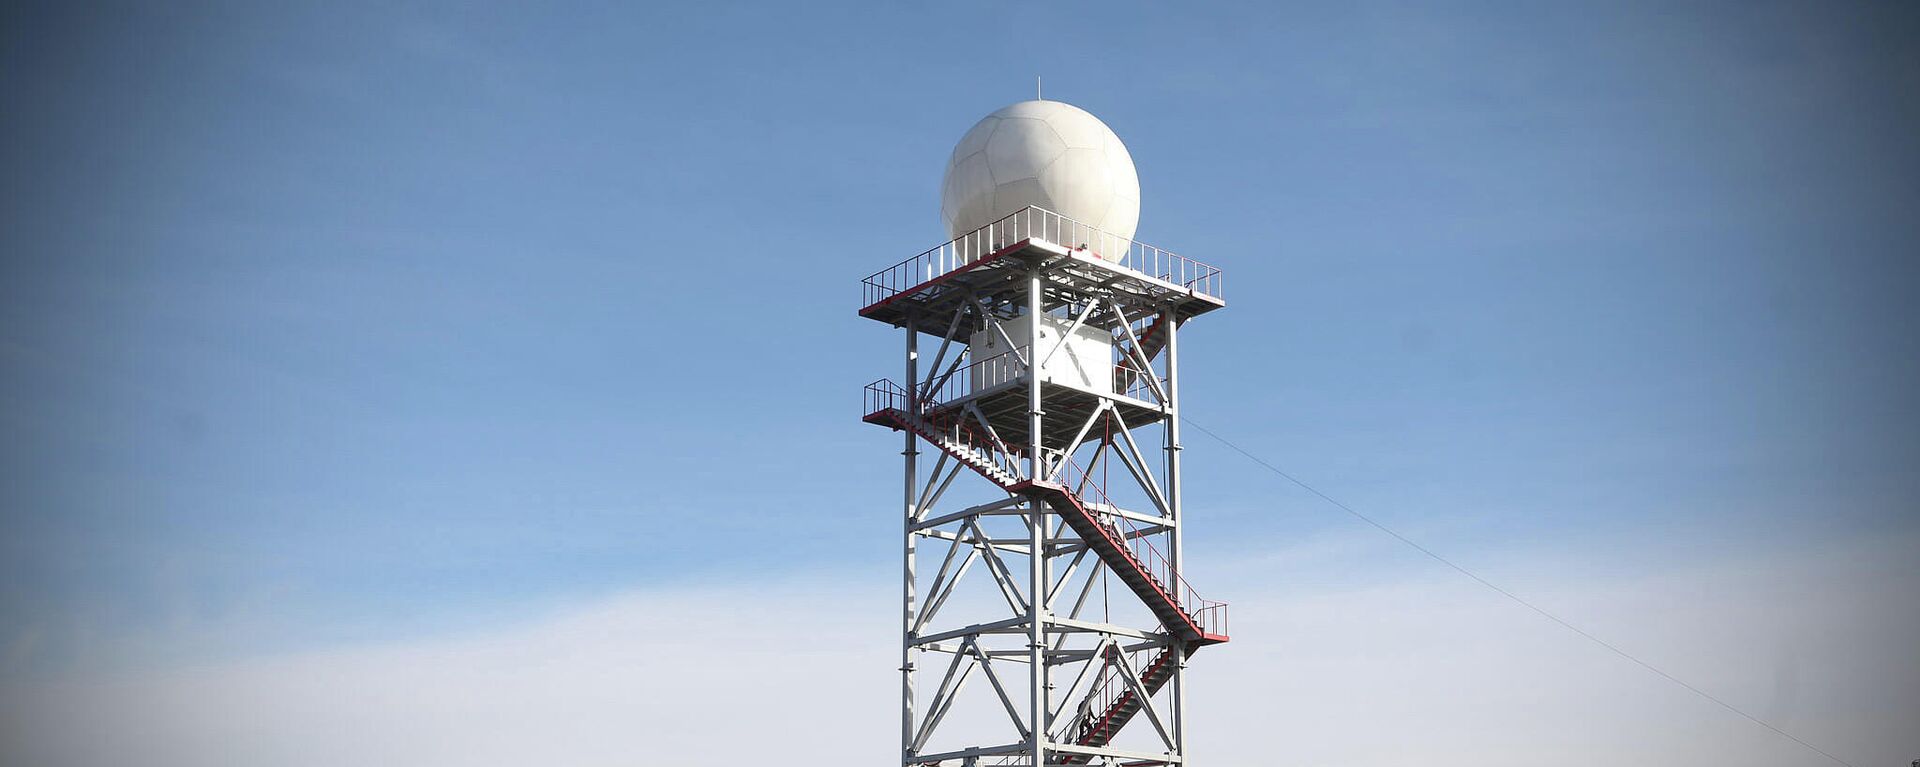 Новый метеорологический радар в Восточной Грузии - Sputnik Грузия, 1920, 13.09.2021